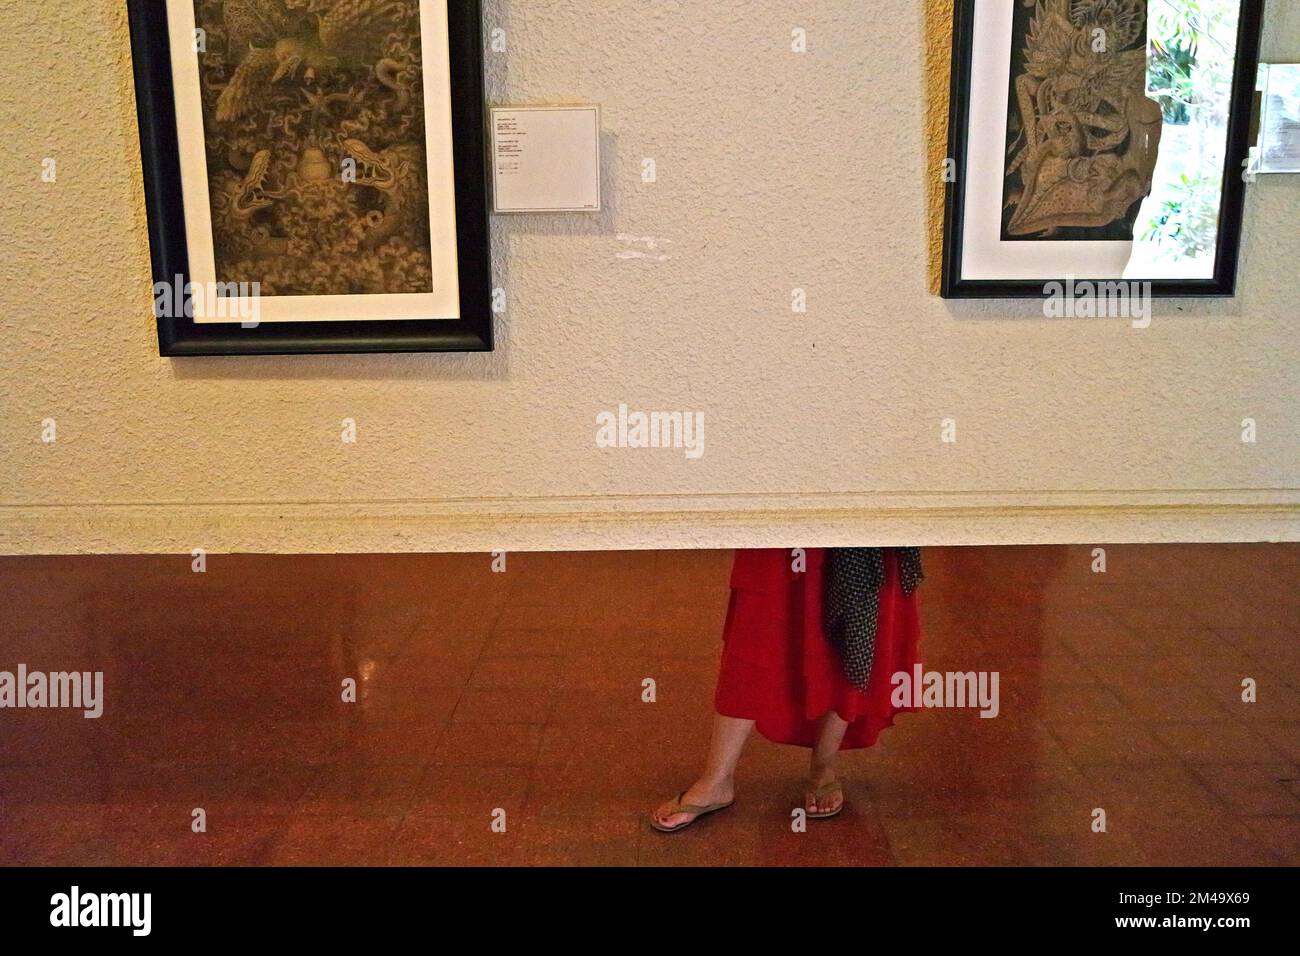 Eine Besucherin wird von einer tragbaren Ausstellungswand aus fotografiert, während sie im Museum Puri Lukisan (Gemäldepalastmuseum) in Ubud, Gianyar, Bali, Indonesien, steht, um auf Gemälde zu achten. Stockfoto